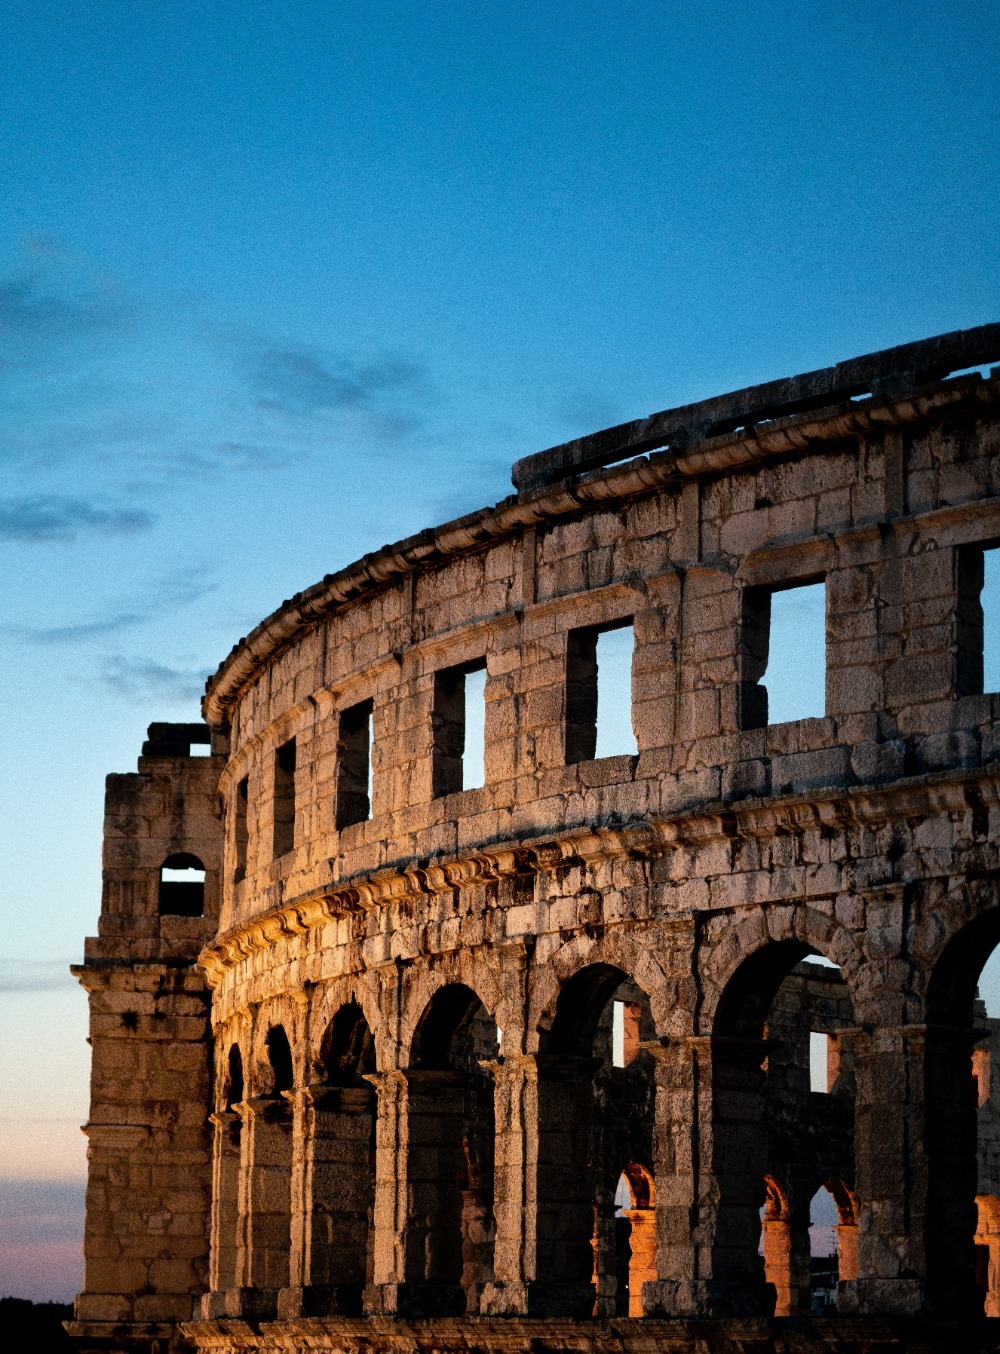 Ρωμαϊκό μπετόν: Πώς επουλώνει τις ρωγμές του – Η αντοχή στον χρόνο